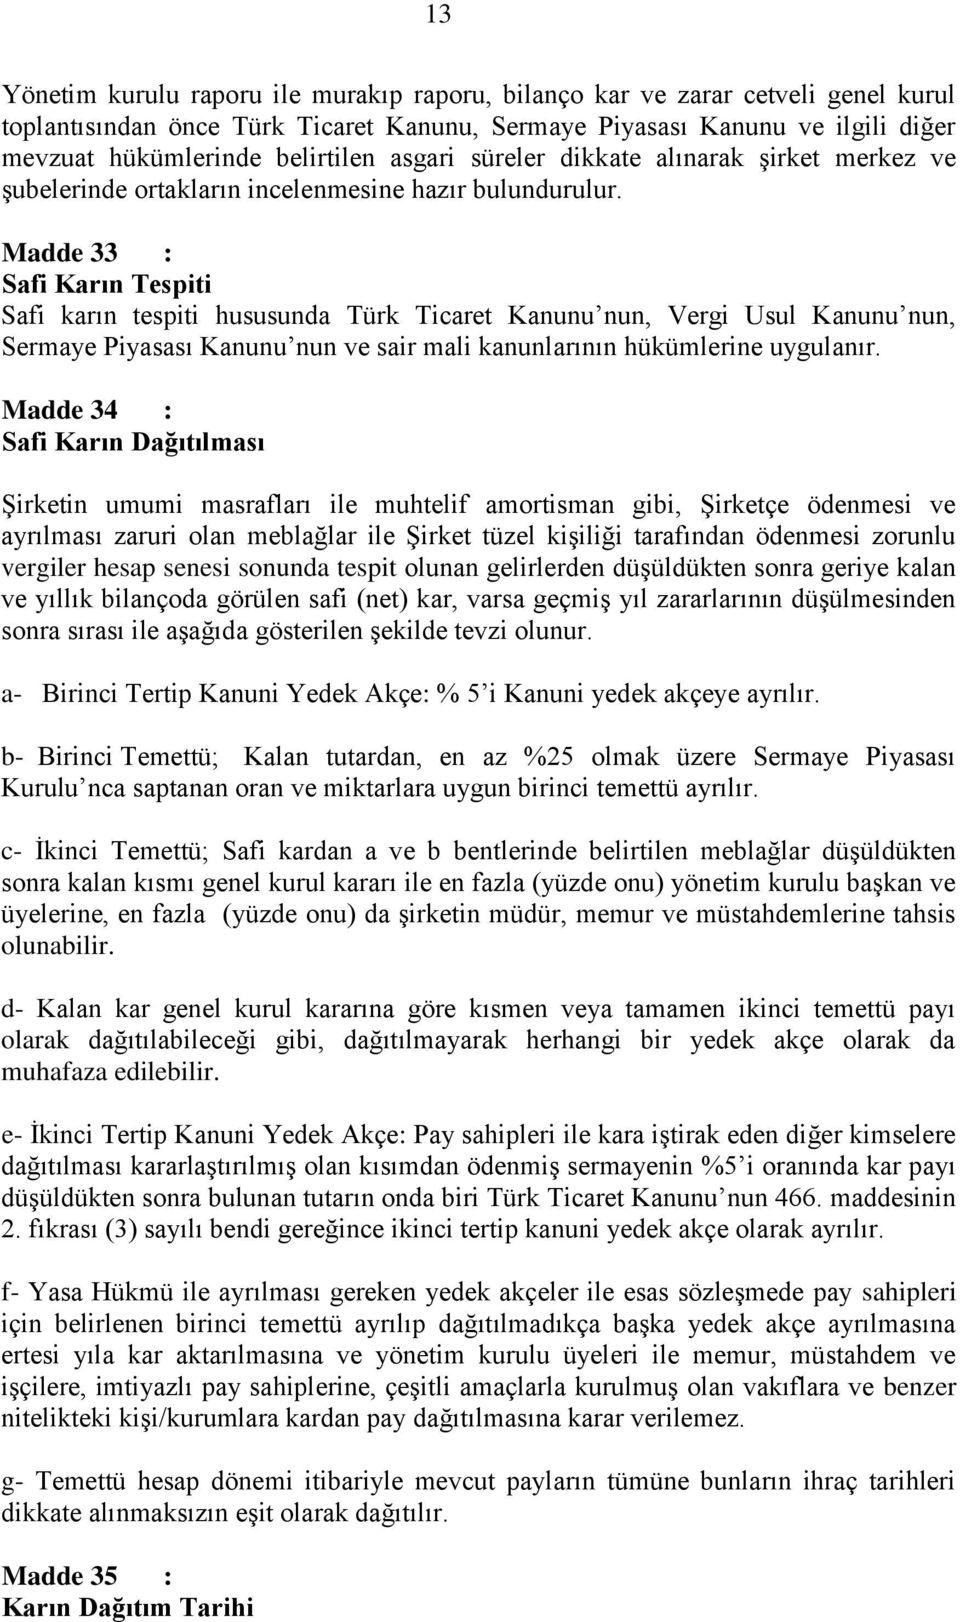 Madde 33 : Safi Karın Tespiti Safi karın tespiti hususunda Türk Ticaret Kanunu nun, Vergi Usul Kanunu nun, Sermaye Piyasası Kanunu nun ve sair mali kanunlarının hükümlerine uygulanır.